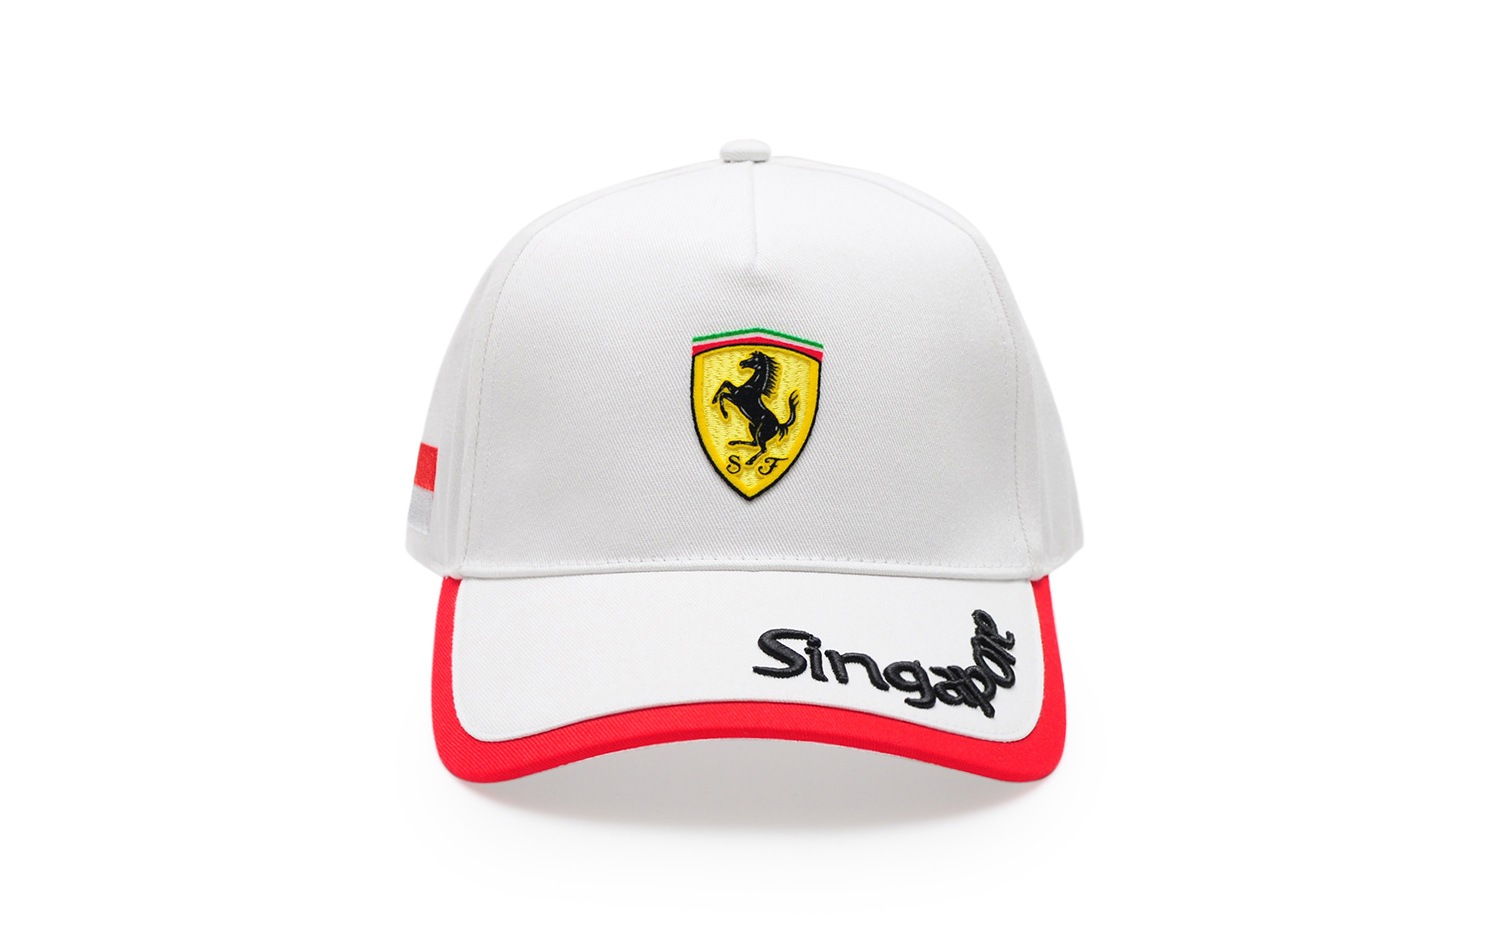 法拉利專賣店 (Ferrari Store) 新加坡城市系列白色鴨舌帽